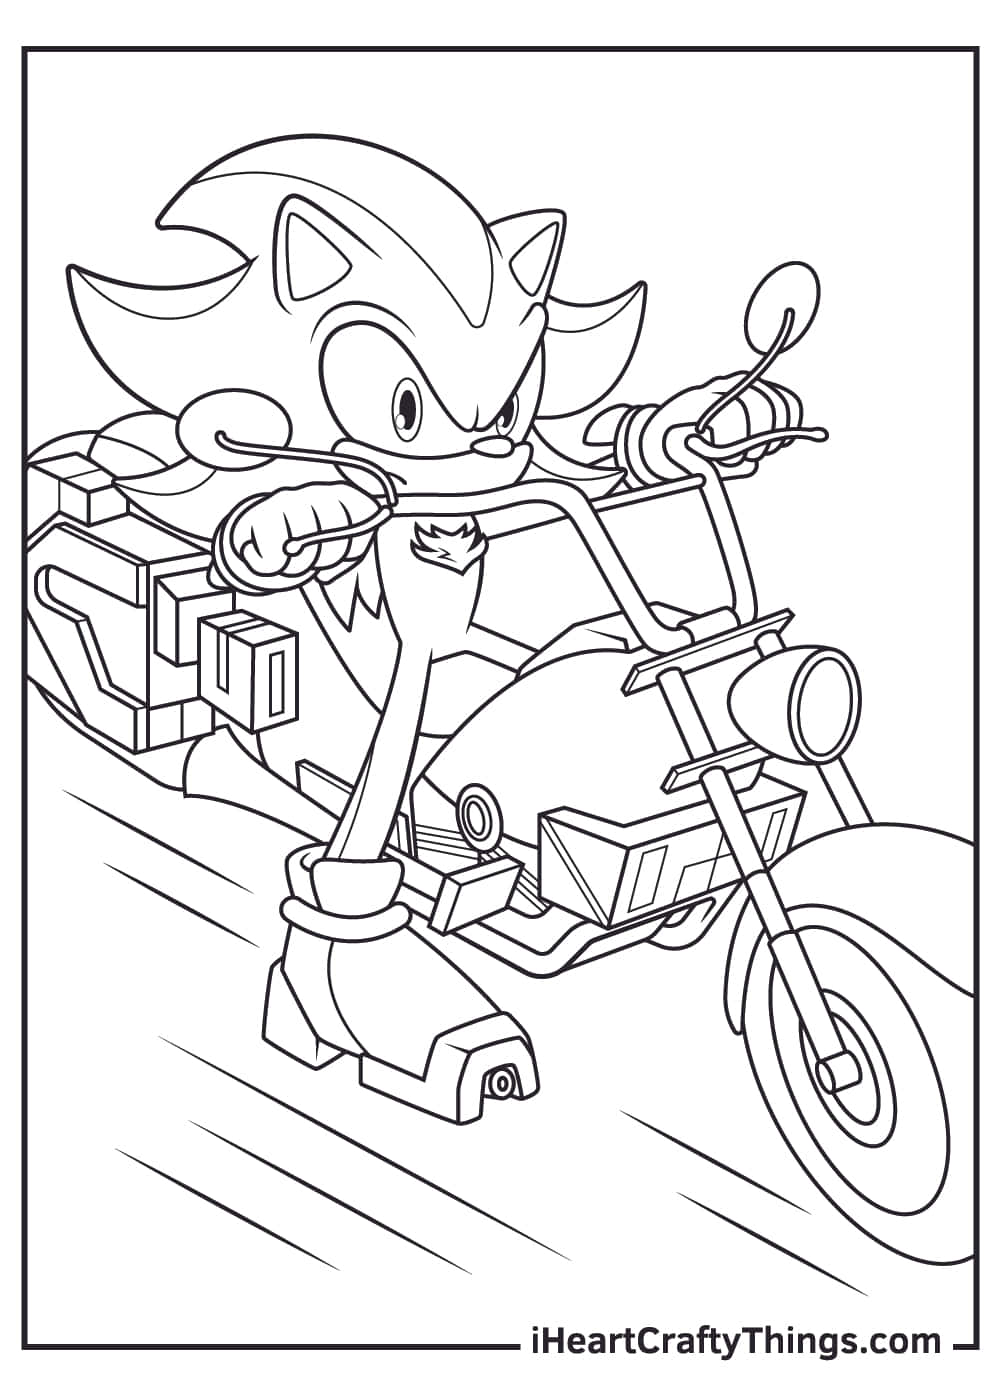 Imagende Shadow The Hedgehog En Una Motocicleta Para Colorear De Sonic